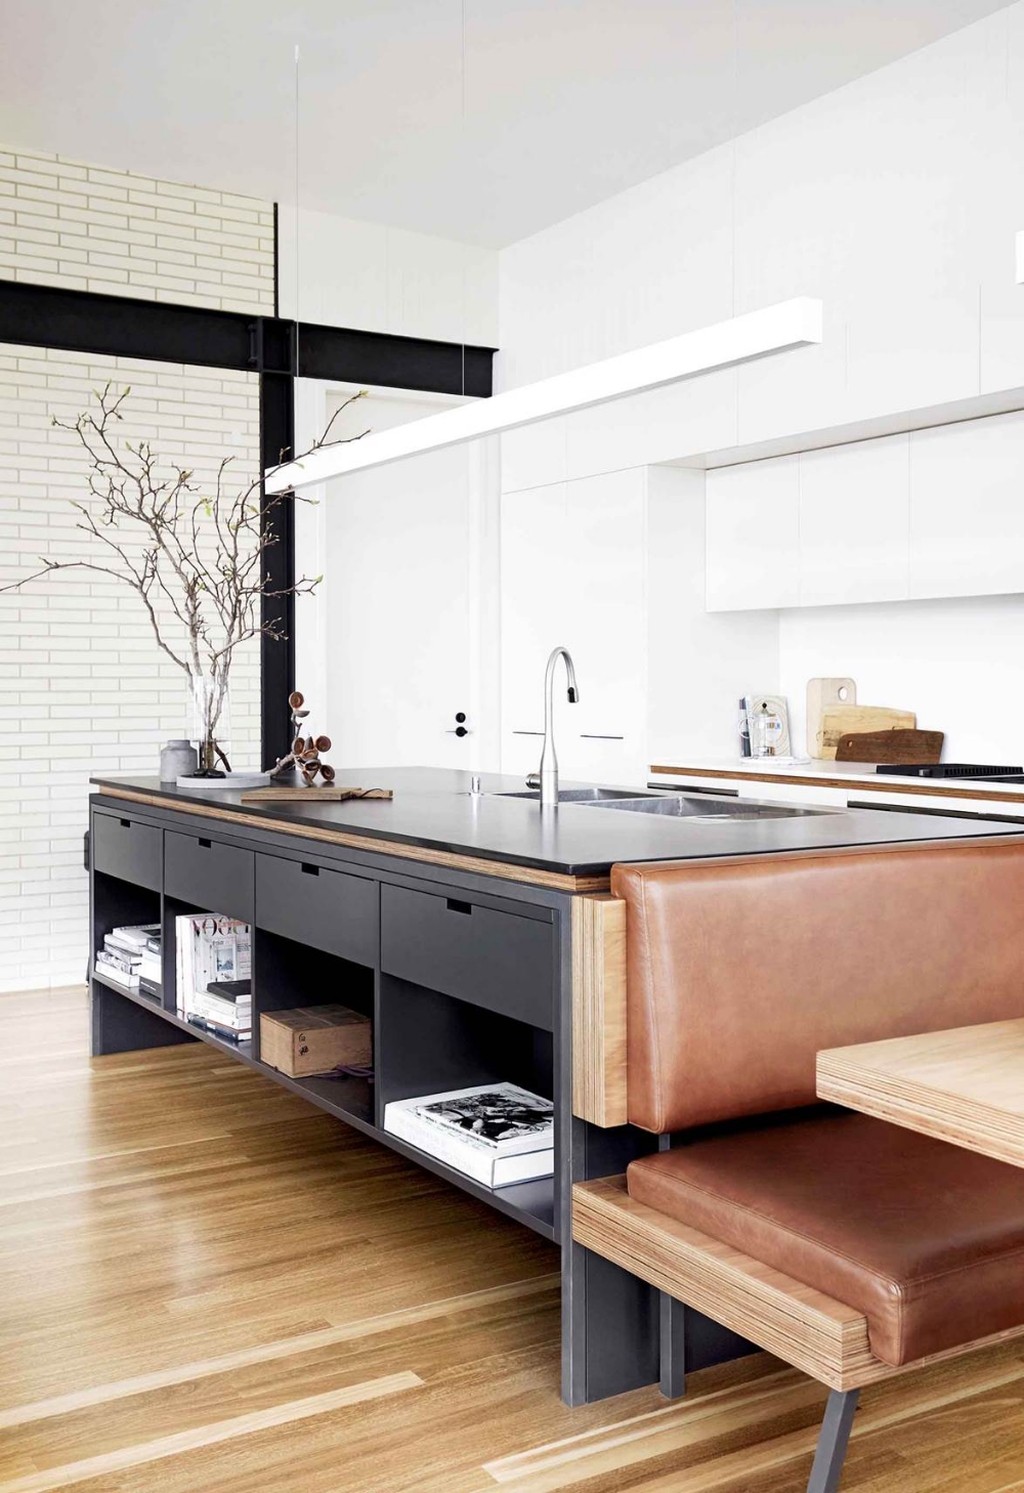 Elegant Modern Kitchen Decoration Ideas That Trend For 2019 24